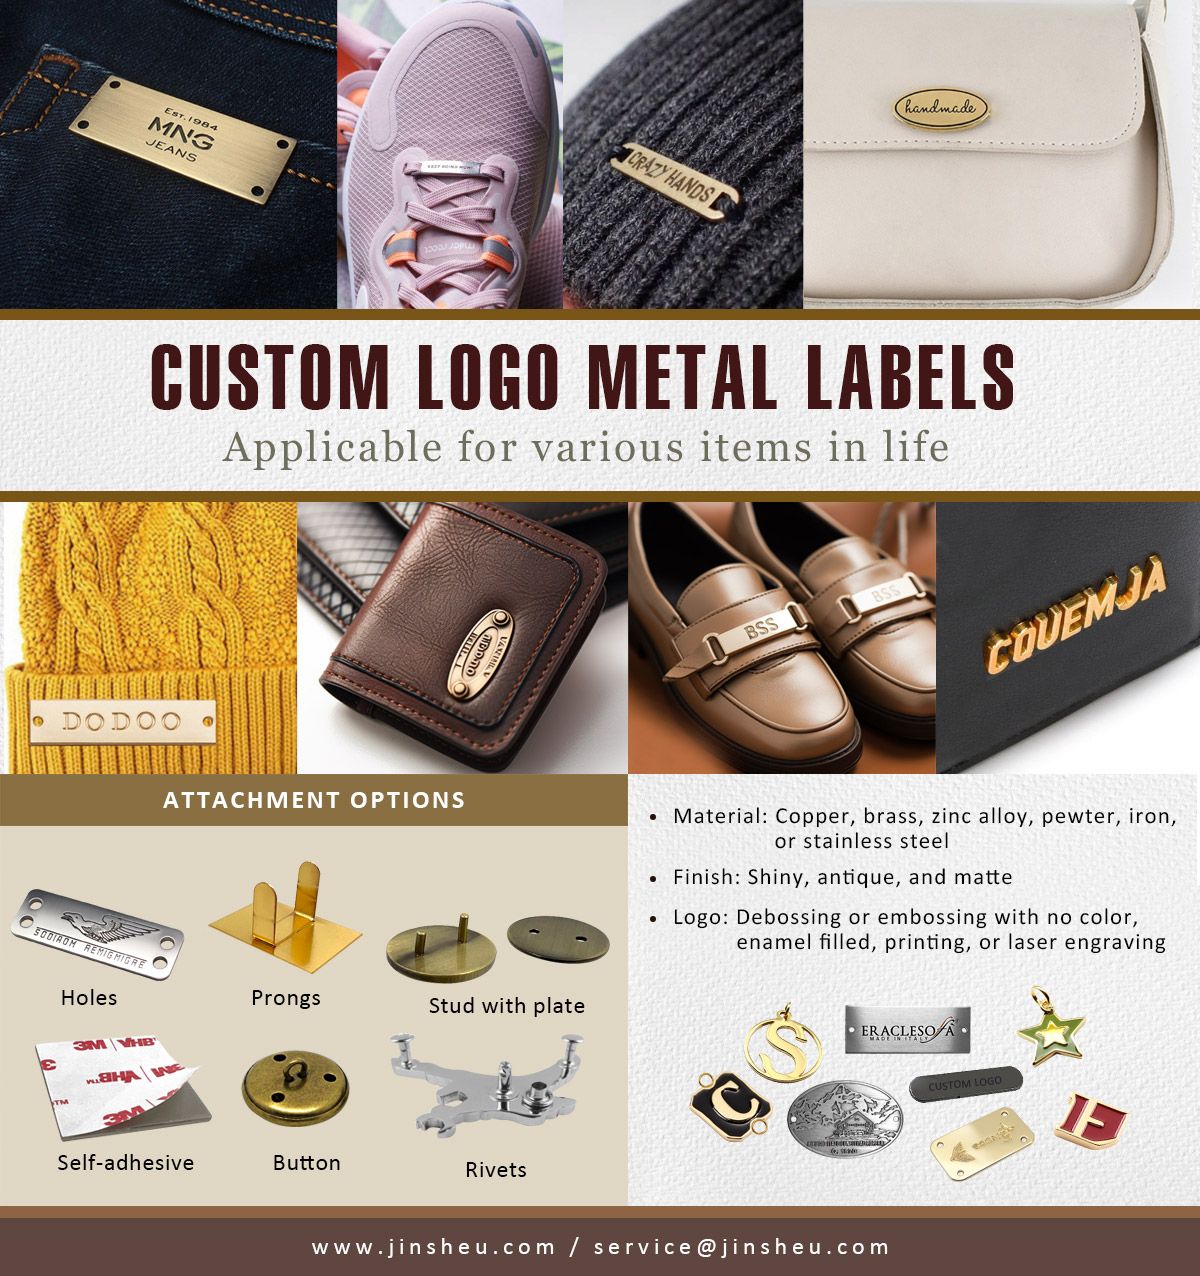 Étiquettes en métal personnalisées avec logos de marque